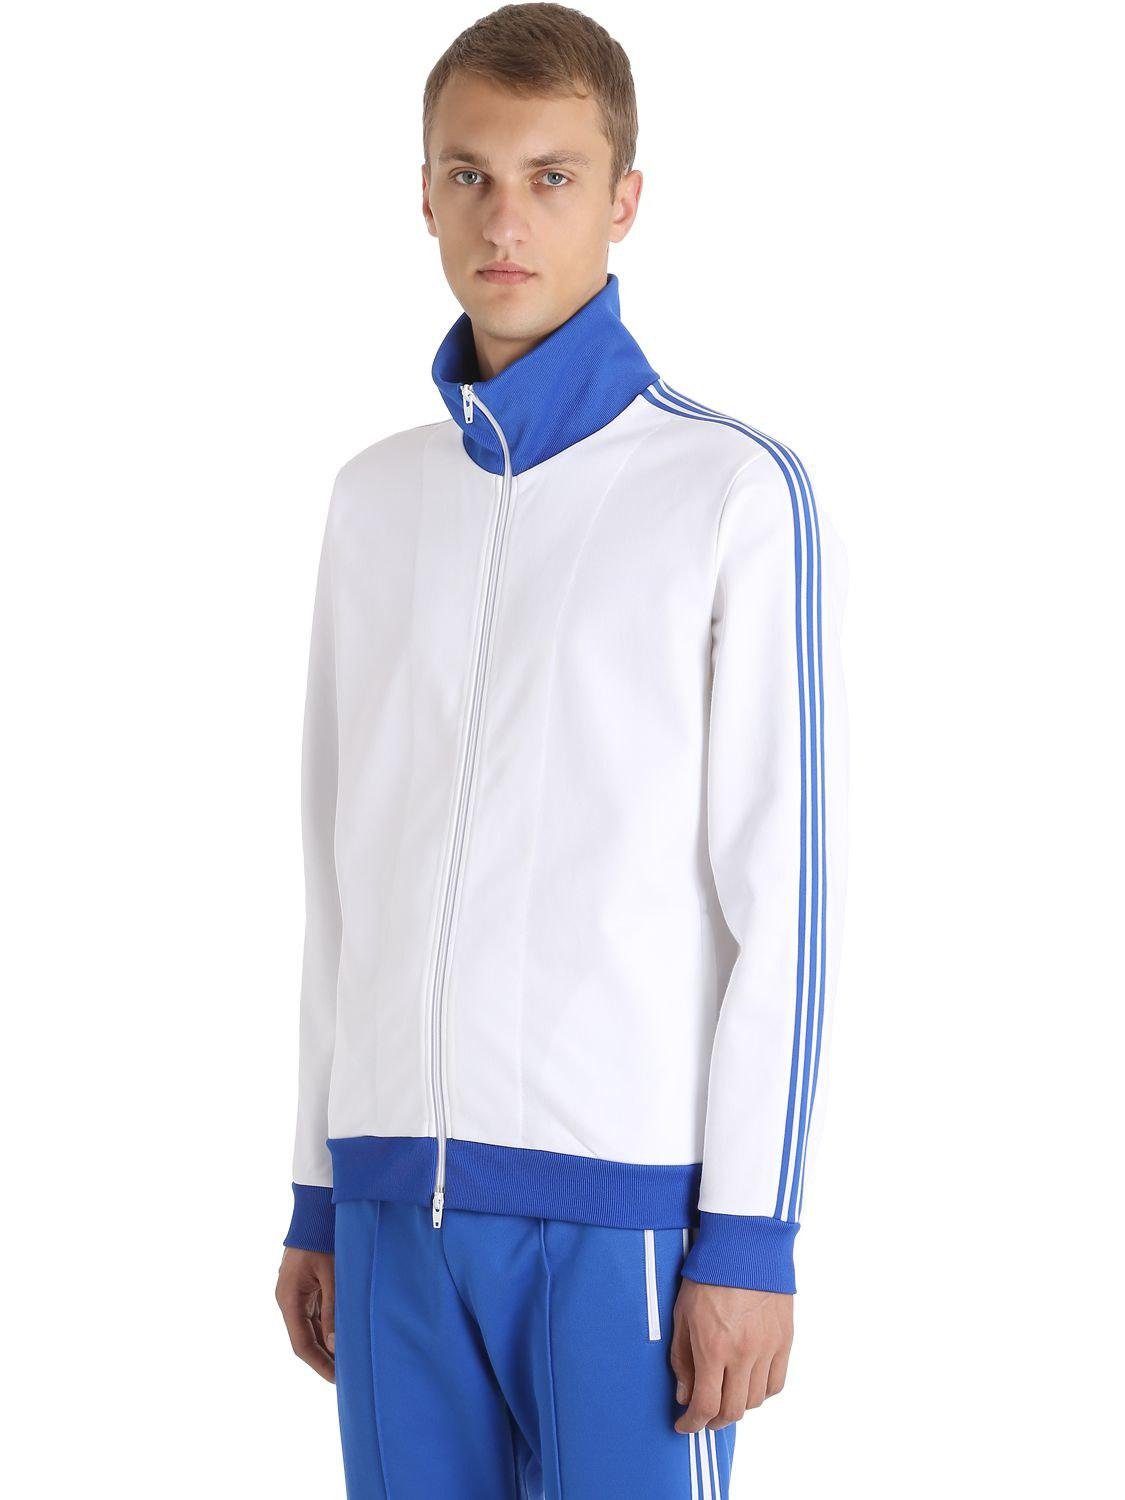 adidas Originals Franz Beckenbauer Tracksuit in White/Blue (Blue) for Men -  Lyst